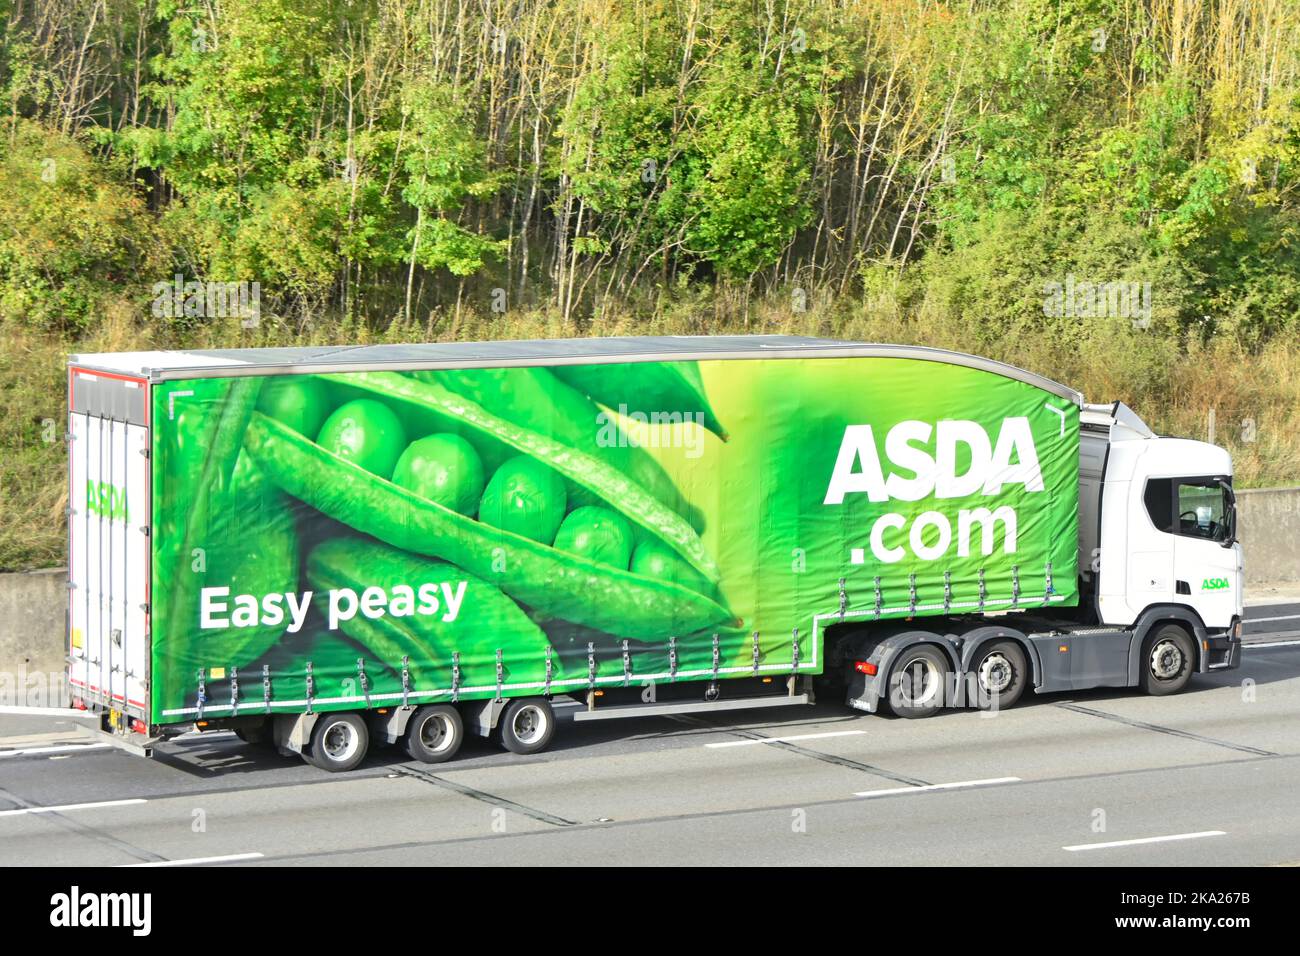 Fácil peasy supermercado Asda Scania hgv camión & vaina de guisante verde publicidad gráfico cortina lateral vista remolque articulado conducción carretera autopista Reino Unido Foto de stock